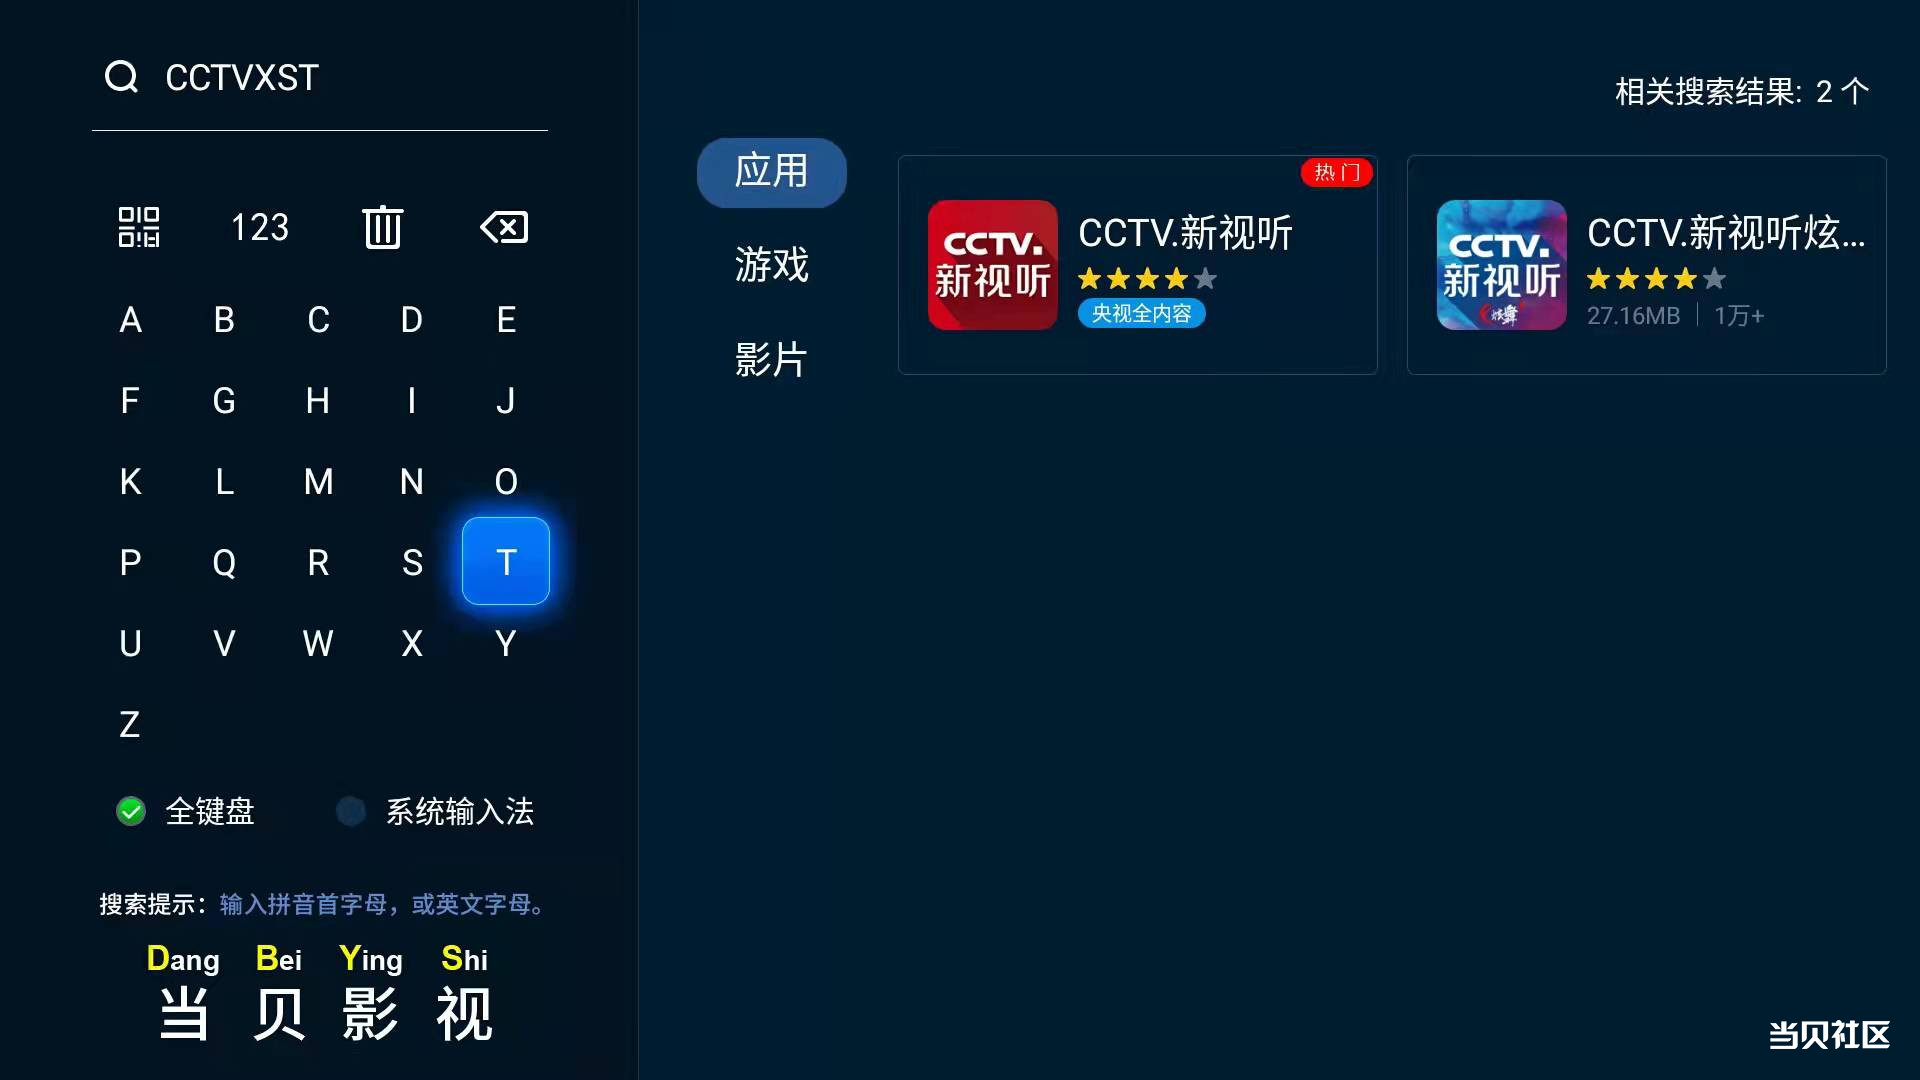 下载CCTV新视听.jpg